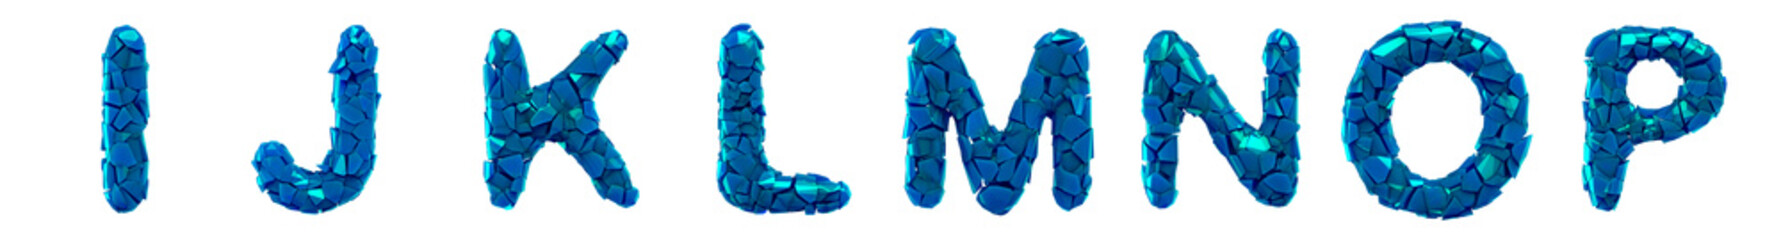 Plastic letters set I, J, K, L, M, N, O, P made of 3d render plastic shards blue color.